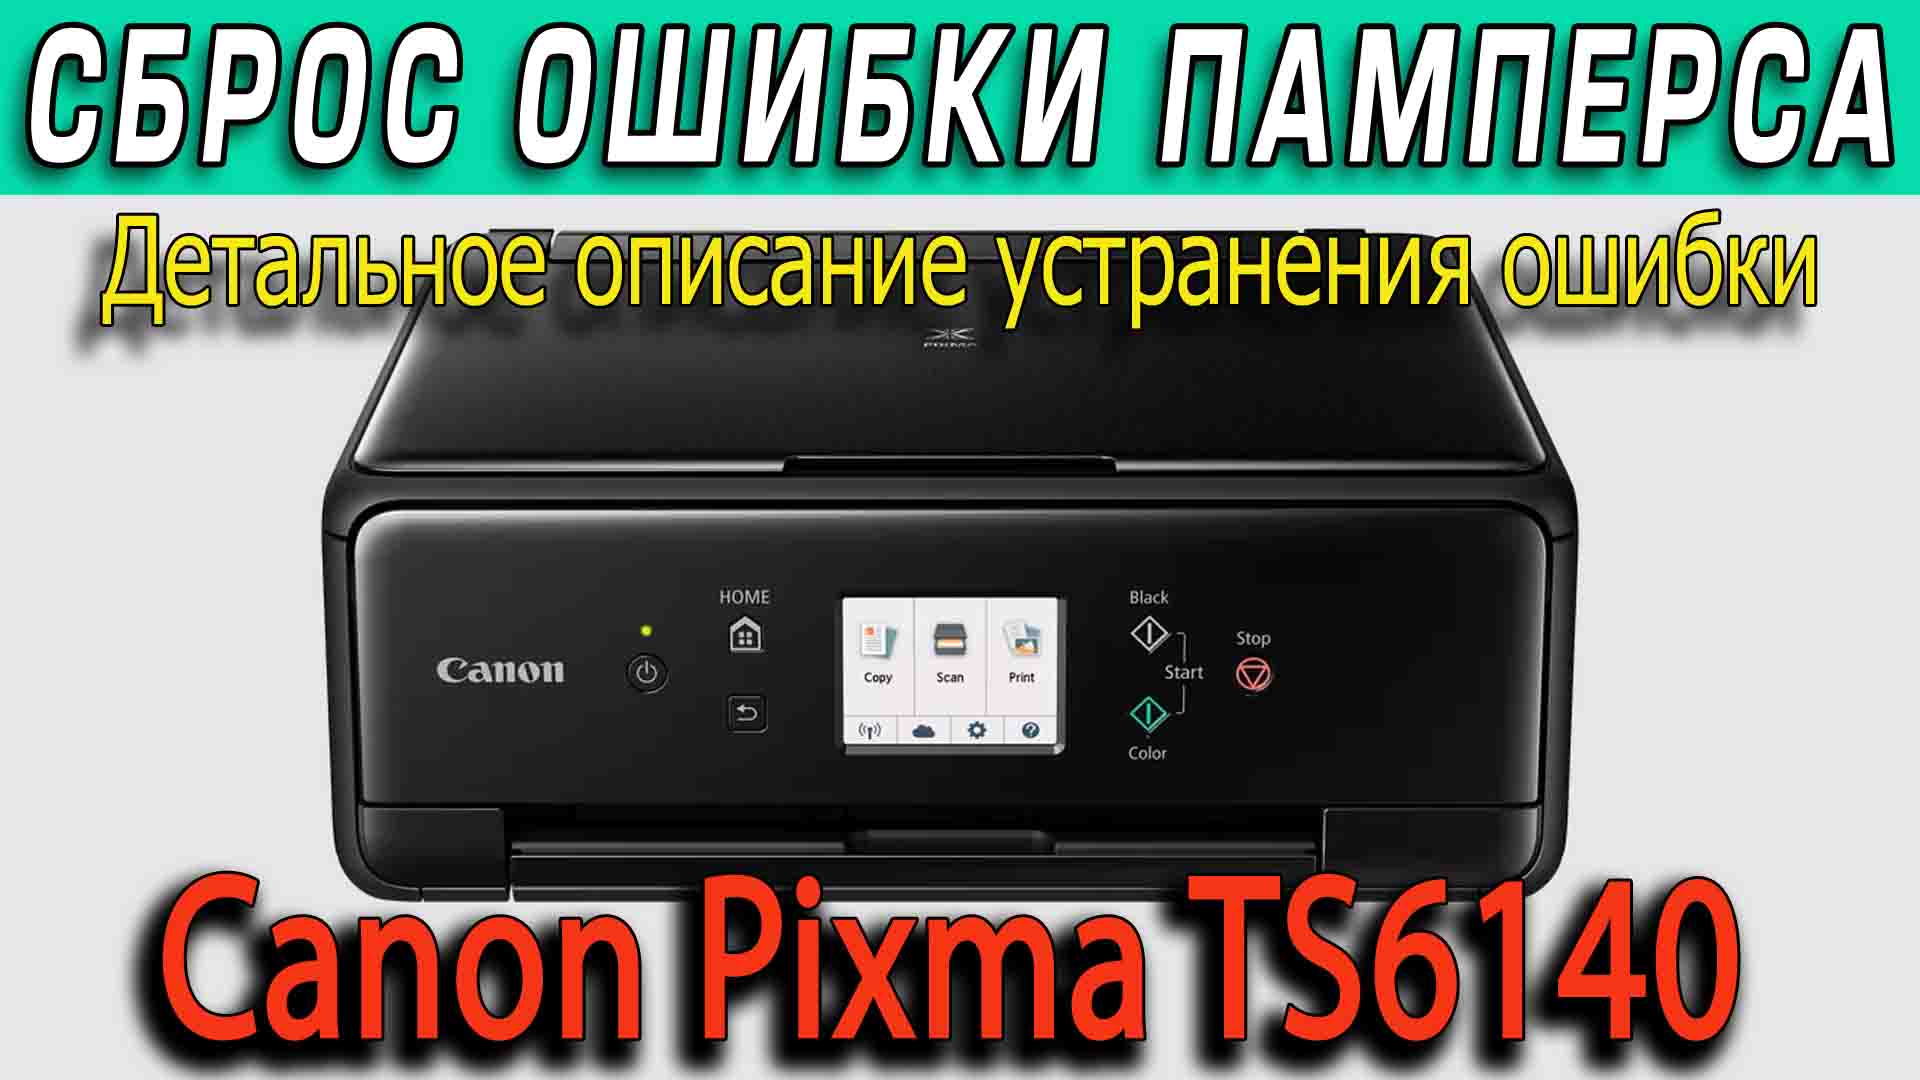 Canon Pixma TS6140 сброс памперса и ошибки 5B00